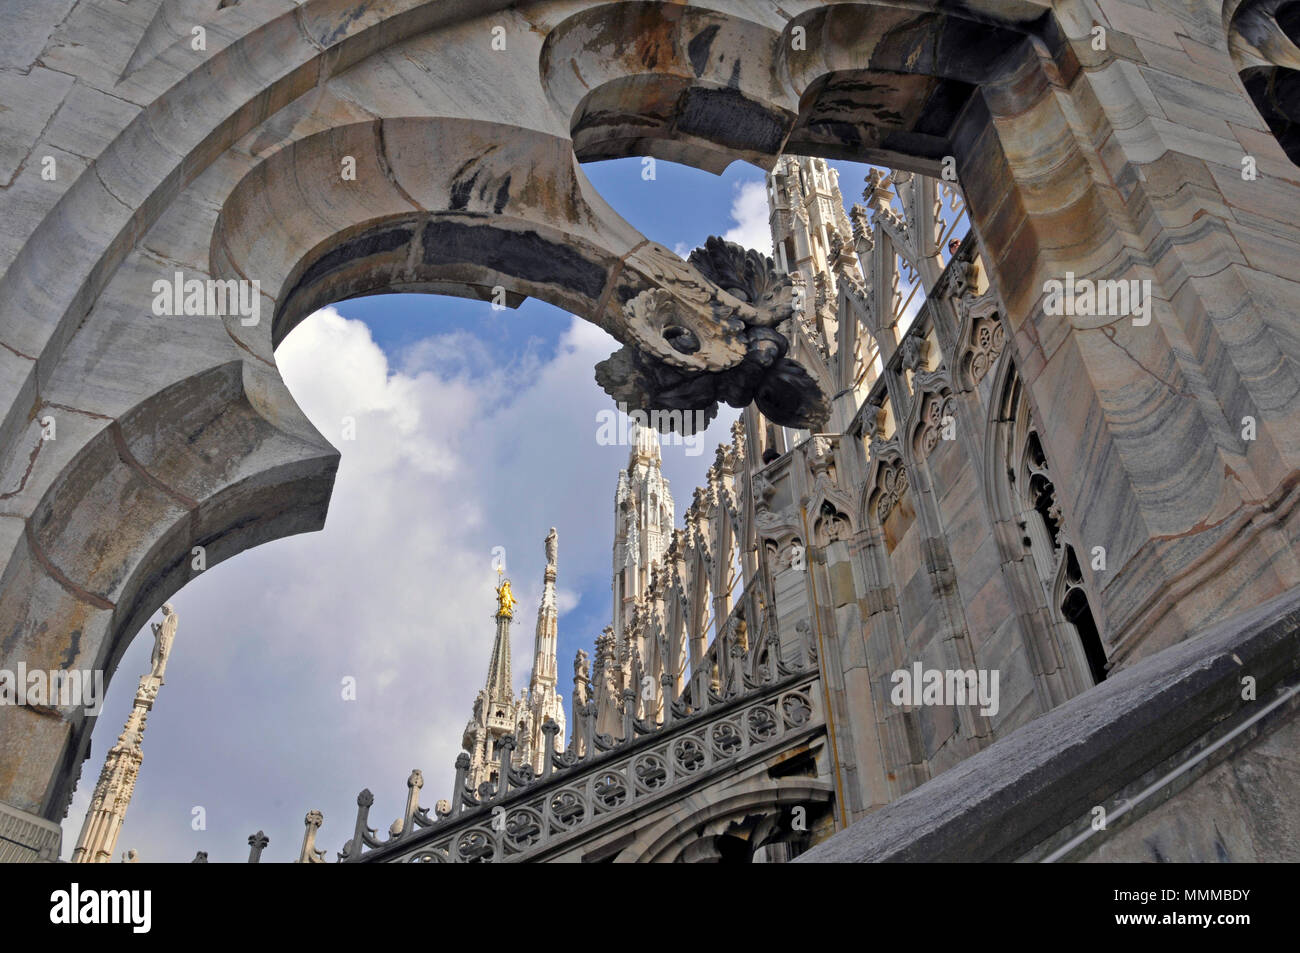 Torres góticas y arcos en la azotea de la catedral del Duomo de Milán, Italia Foto de stock